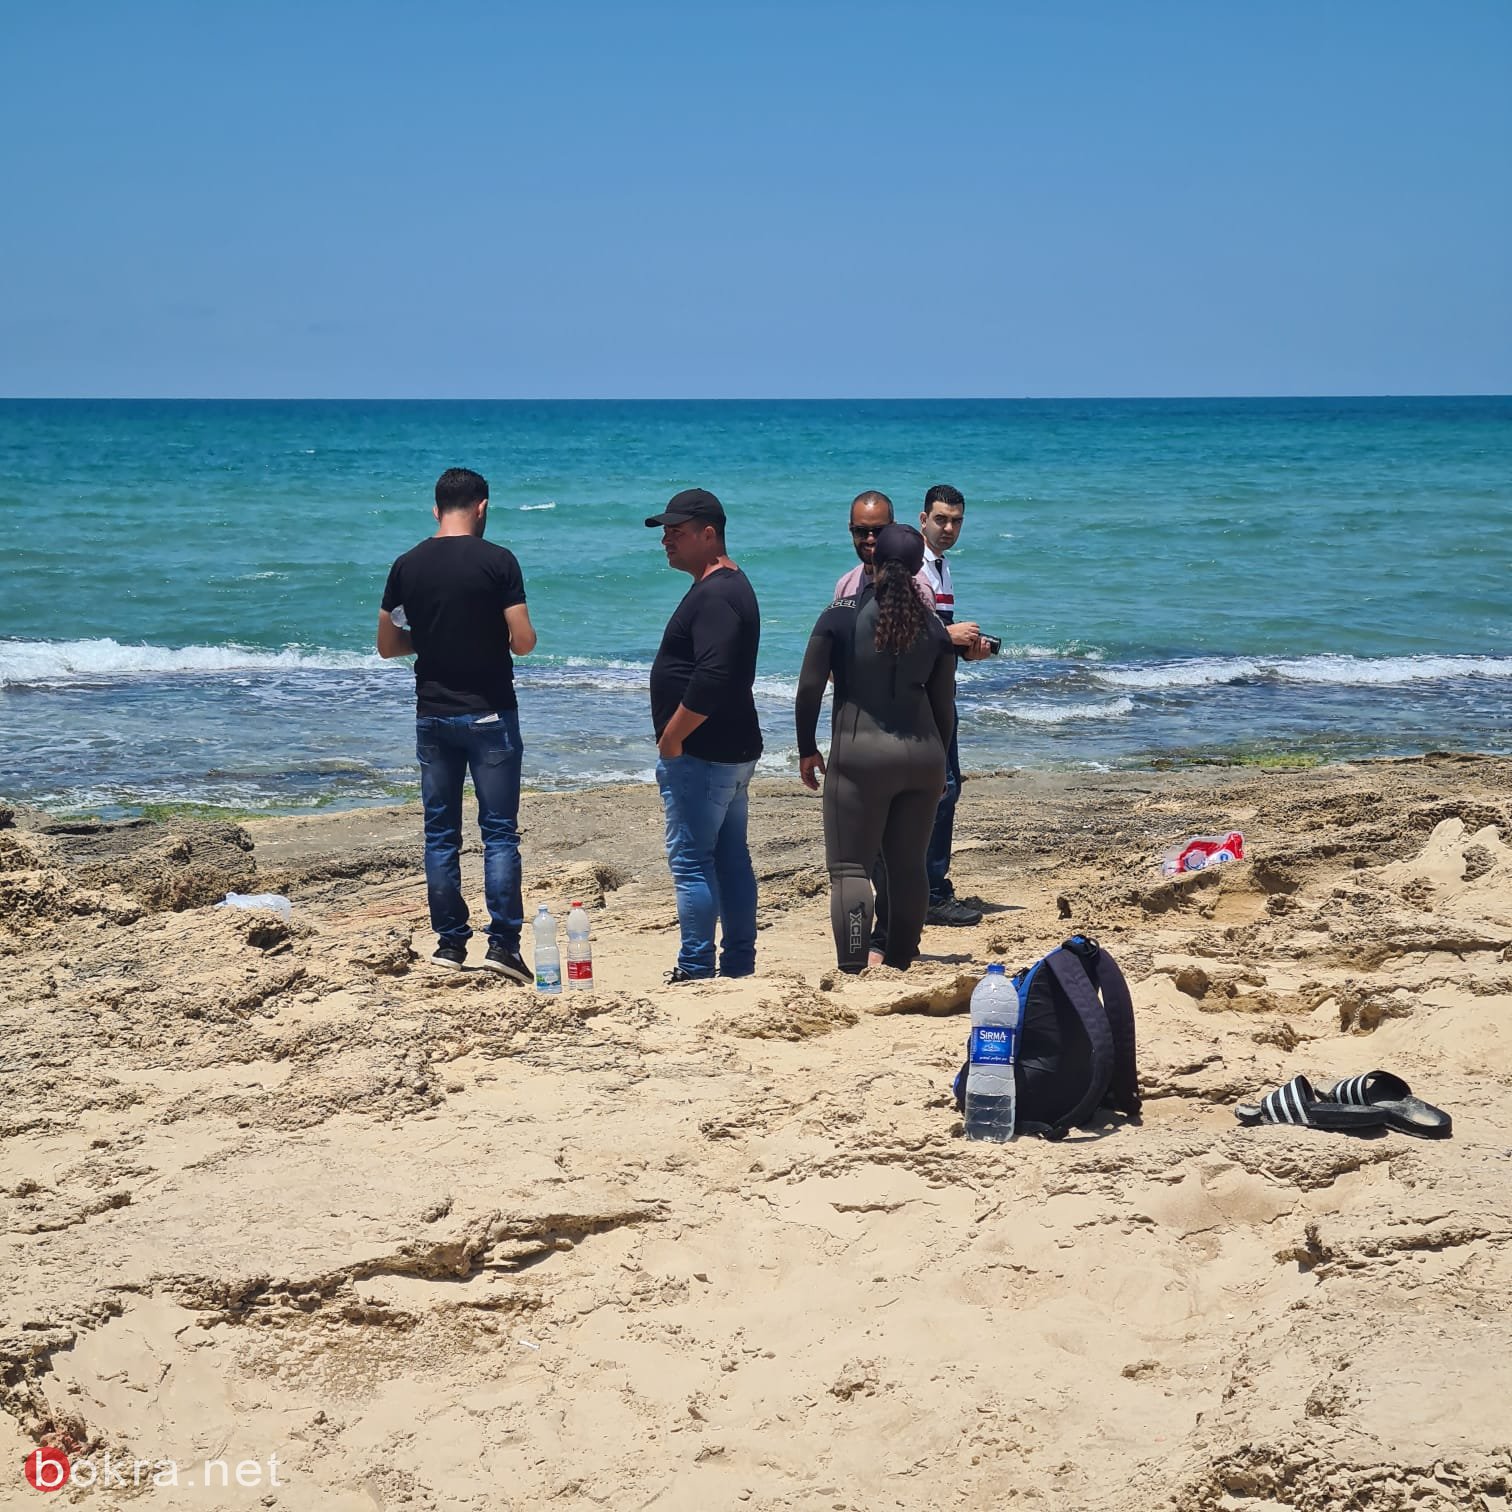 د. أمين صفيّة: عمليات البحث مستمرة من شاطئ عتليت حتى الفريديس للعثور على أيمن-8